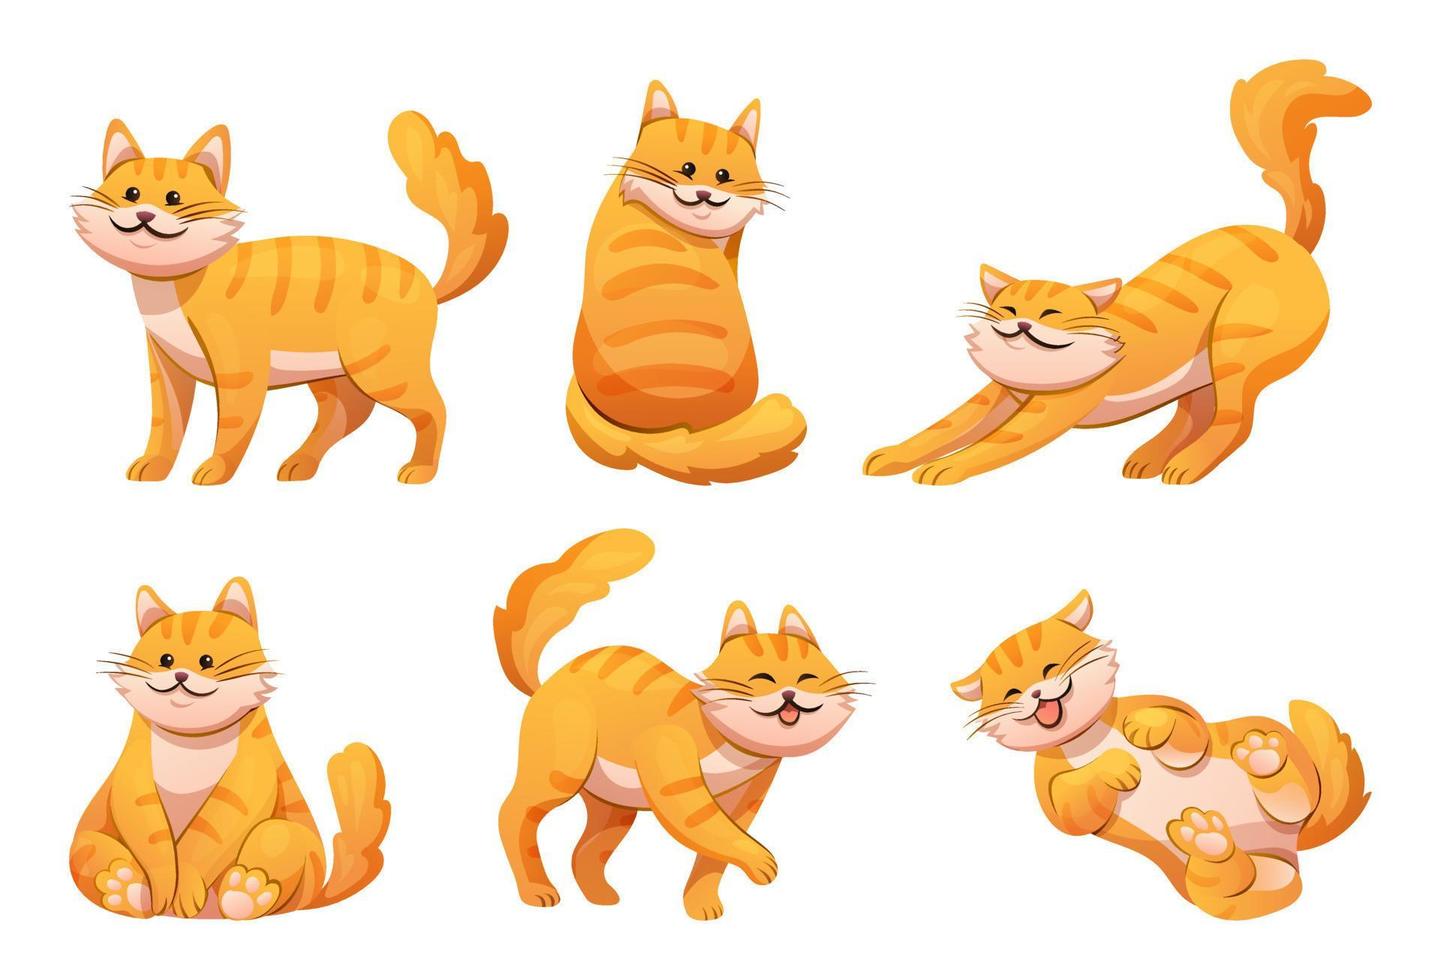 lindo gato rayado naranja en varias poses ilustración de dibujos animados vector